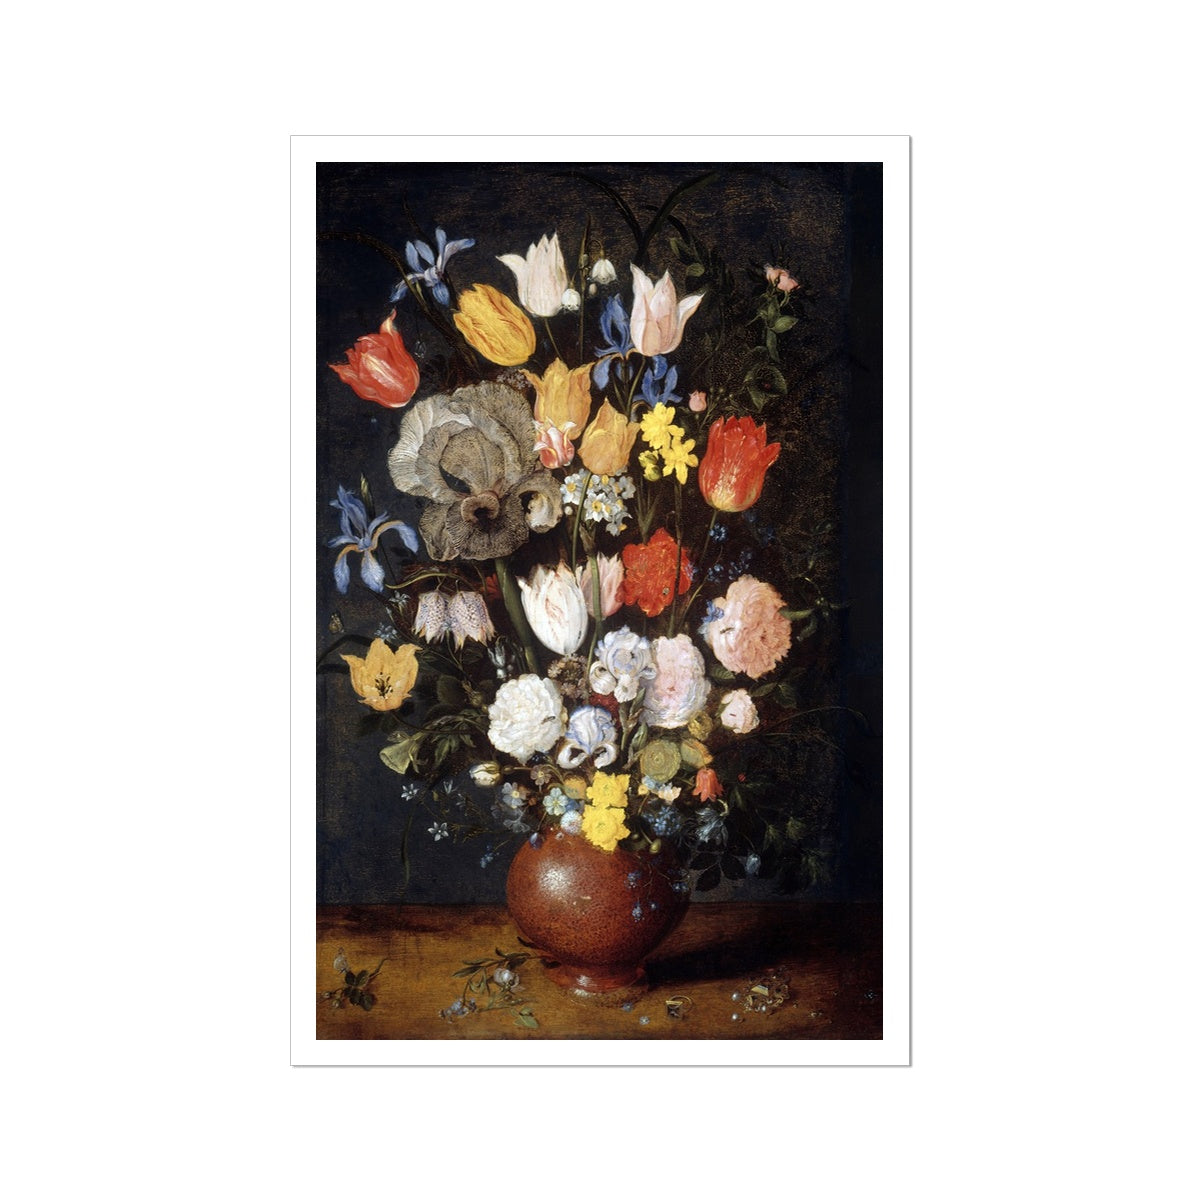 'Bouquet of Flowers in an Earthenware Vase' Still Life by Jan Breughel the Elder. Open Edition Fine Art Print. Historic Art